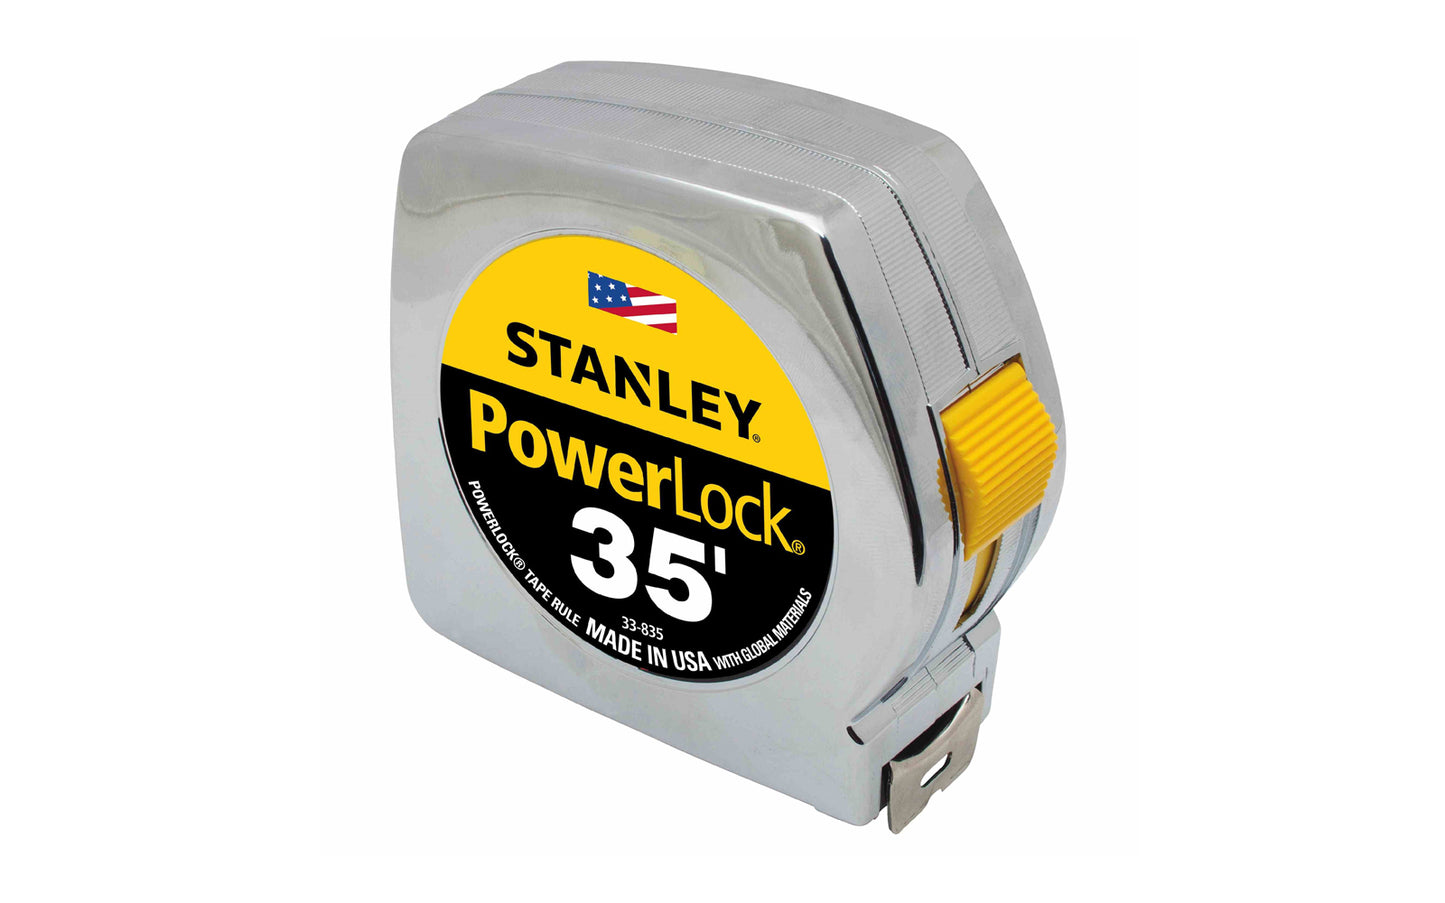 Stanley Powerlock 35' Tape Measure ~ 33-835